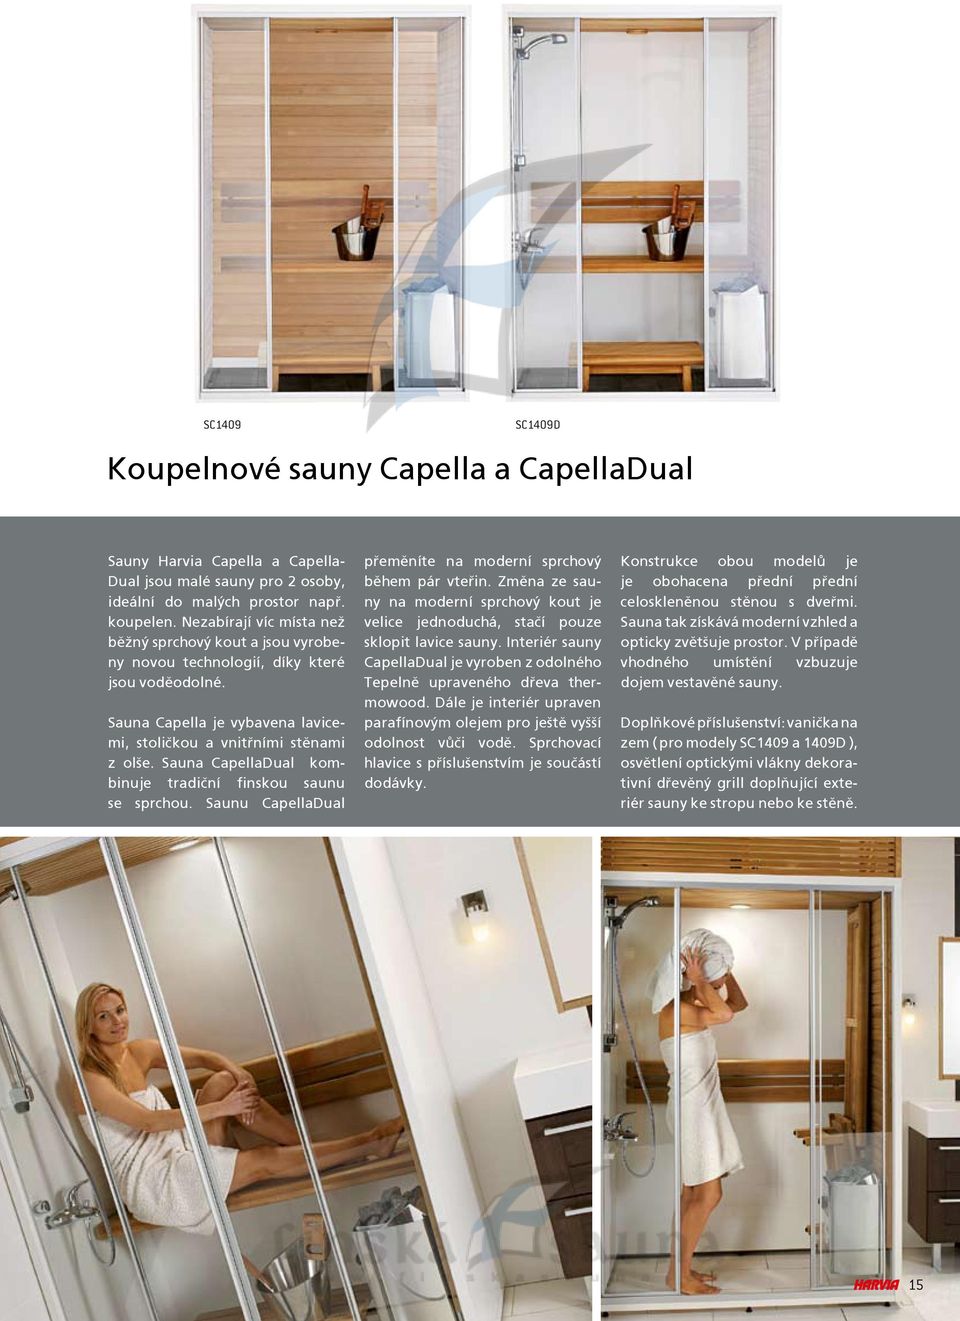 Sauna CapellaDual kombinuje tradièní finskou saunu se sprchou. Saunu CapellaDual pøemìníte na moderní sprchový bìhem pár vteøin.